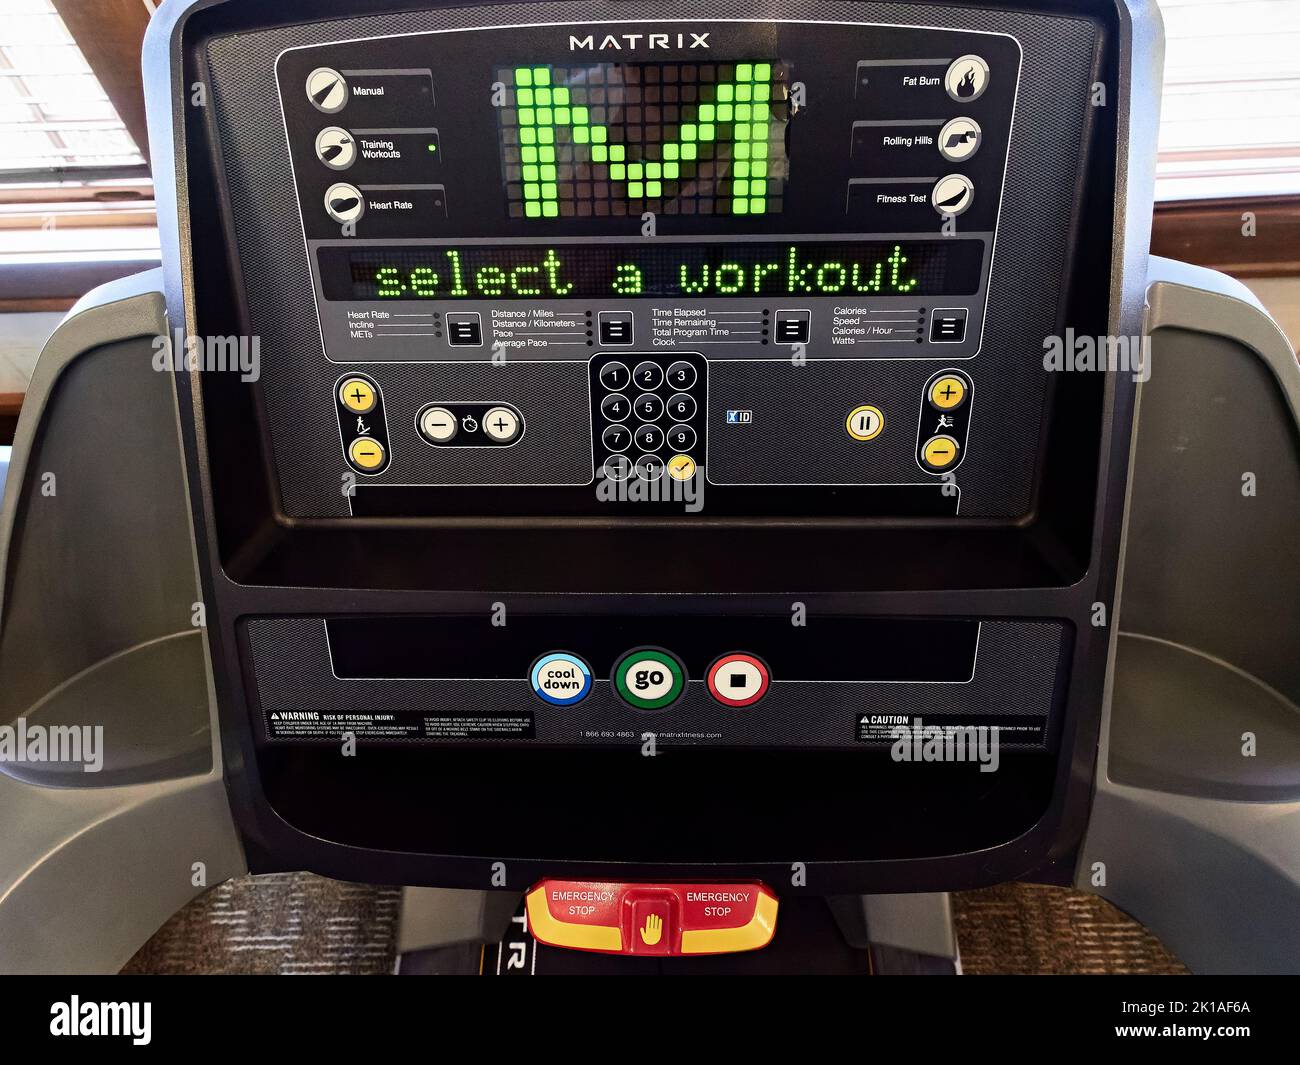 Panel de control en una cinta de correr avanzada Matrix para hacer ejercicio y entrenar en un gimnasio. Foto de stock